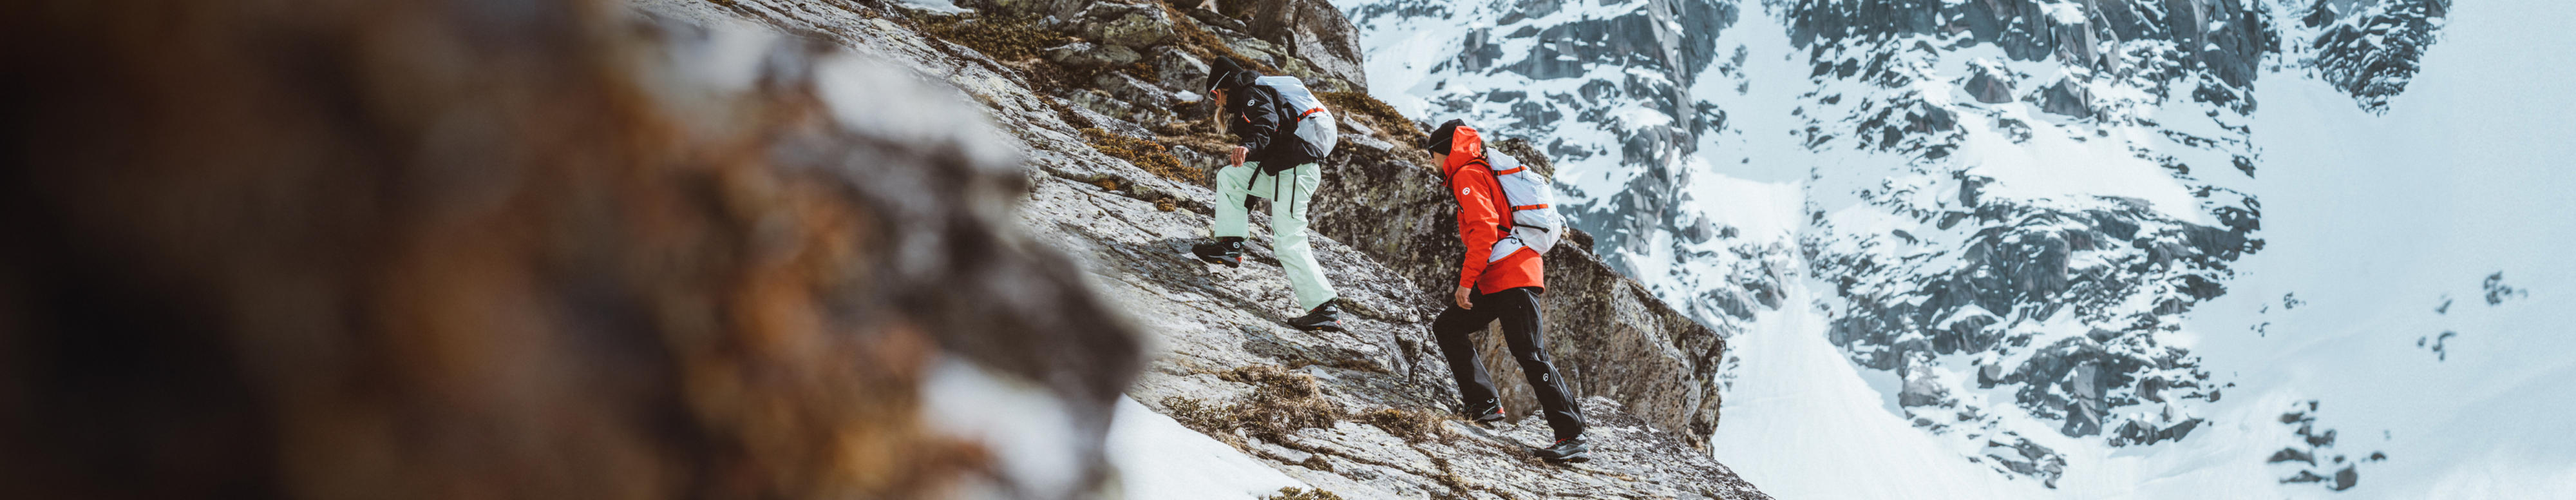 Deux personnes portant des vêtements de la série Summit de The North Face escaladent une montagne dans la neige.